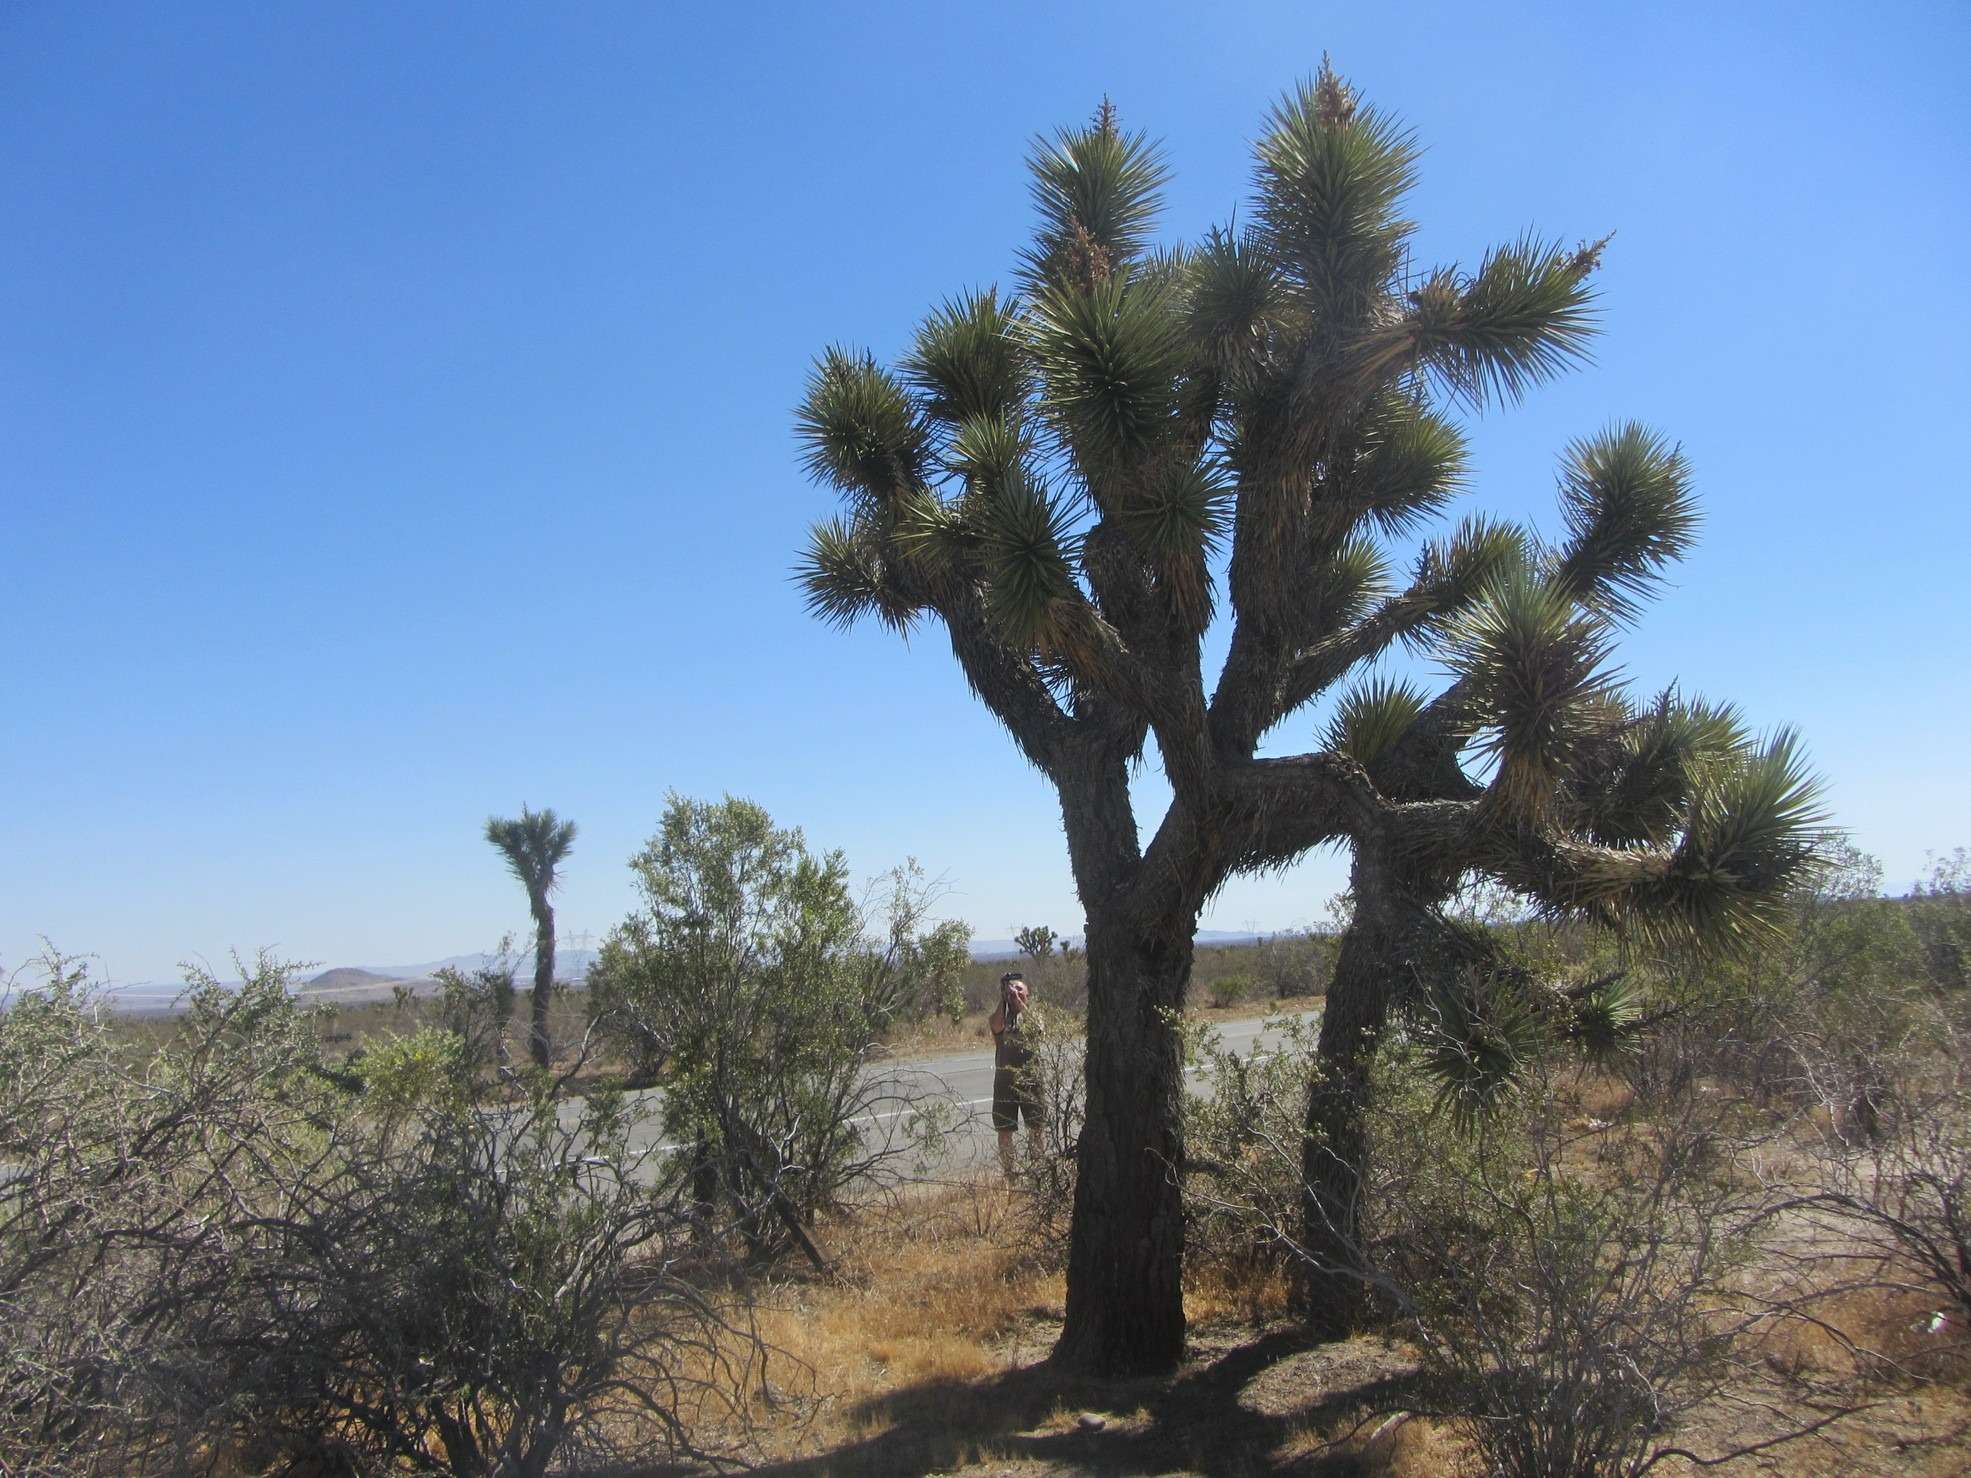 Пустыни встретили нас красивейшими деревьями "джошуа" и жарой в 44 градуса. Если бы мы были там в июле-августе, жара могла достичь и 50 и даже выше.  Я специально сделал остановку, свернув с шоссе, когда увидел на термометре машины "Out 44º", просто чтобы почувствовать, что такое +44. 